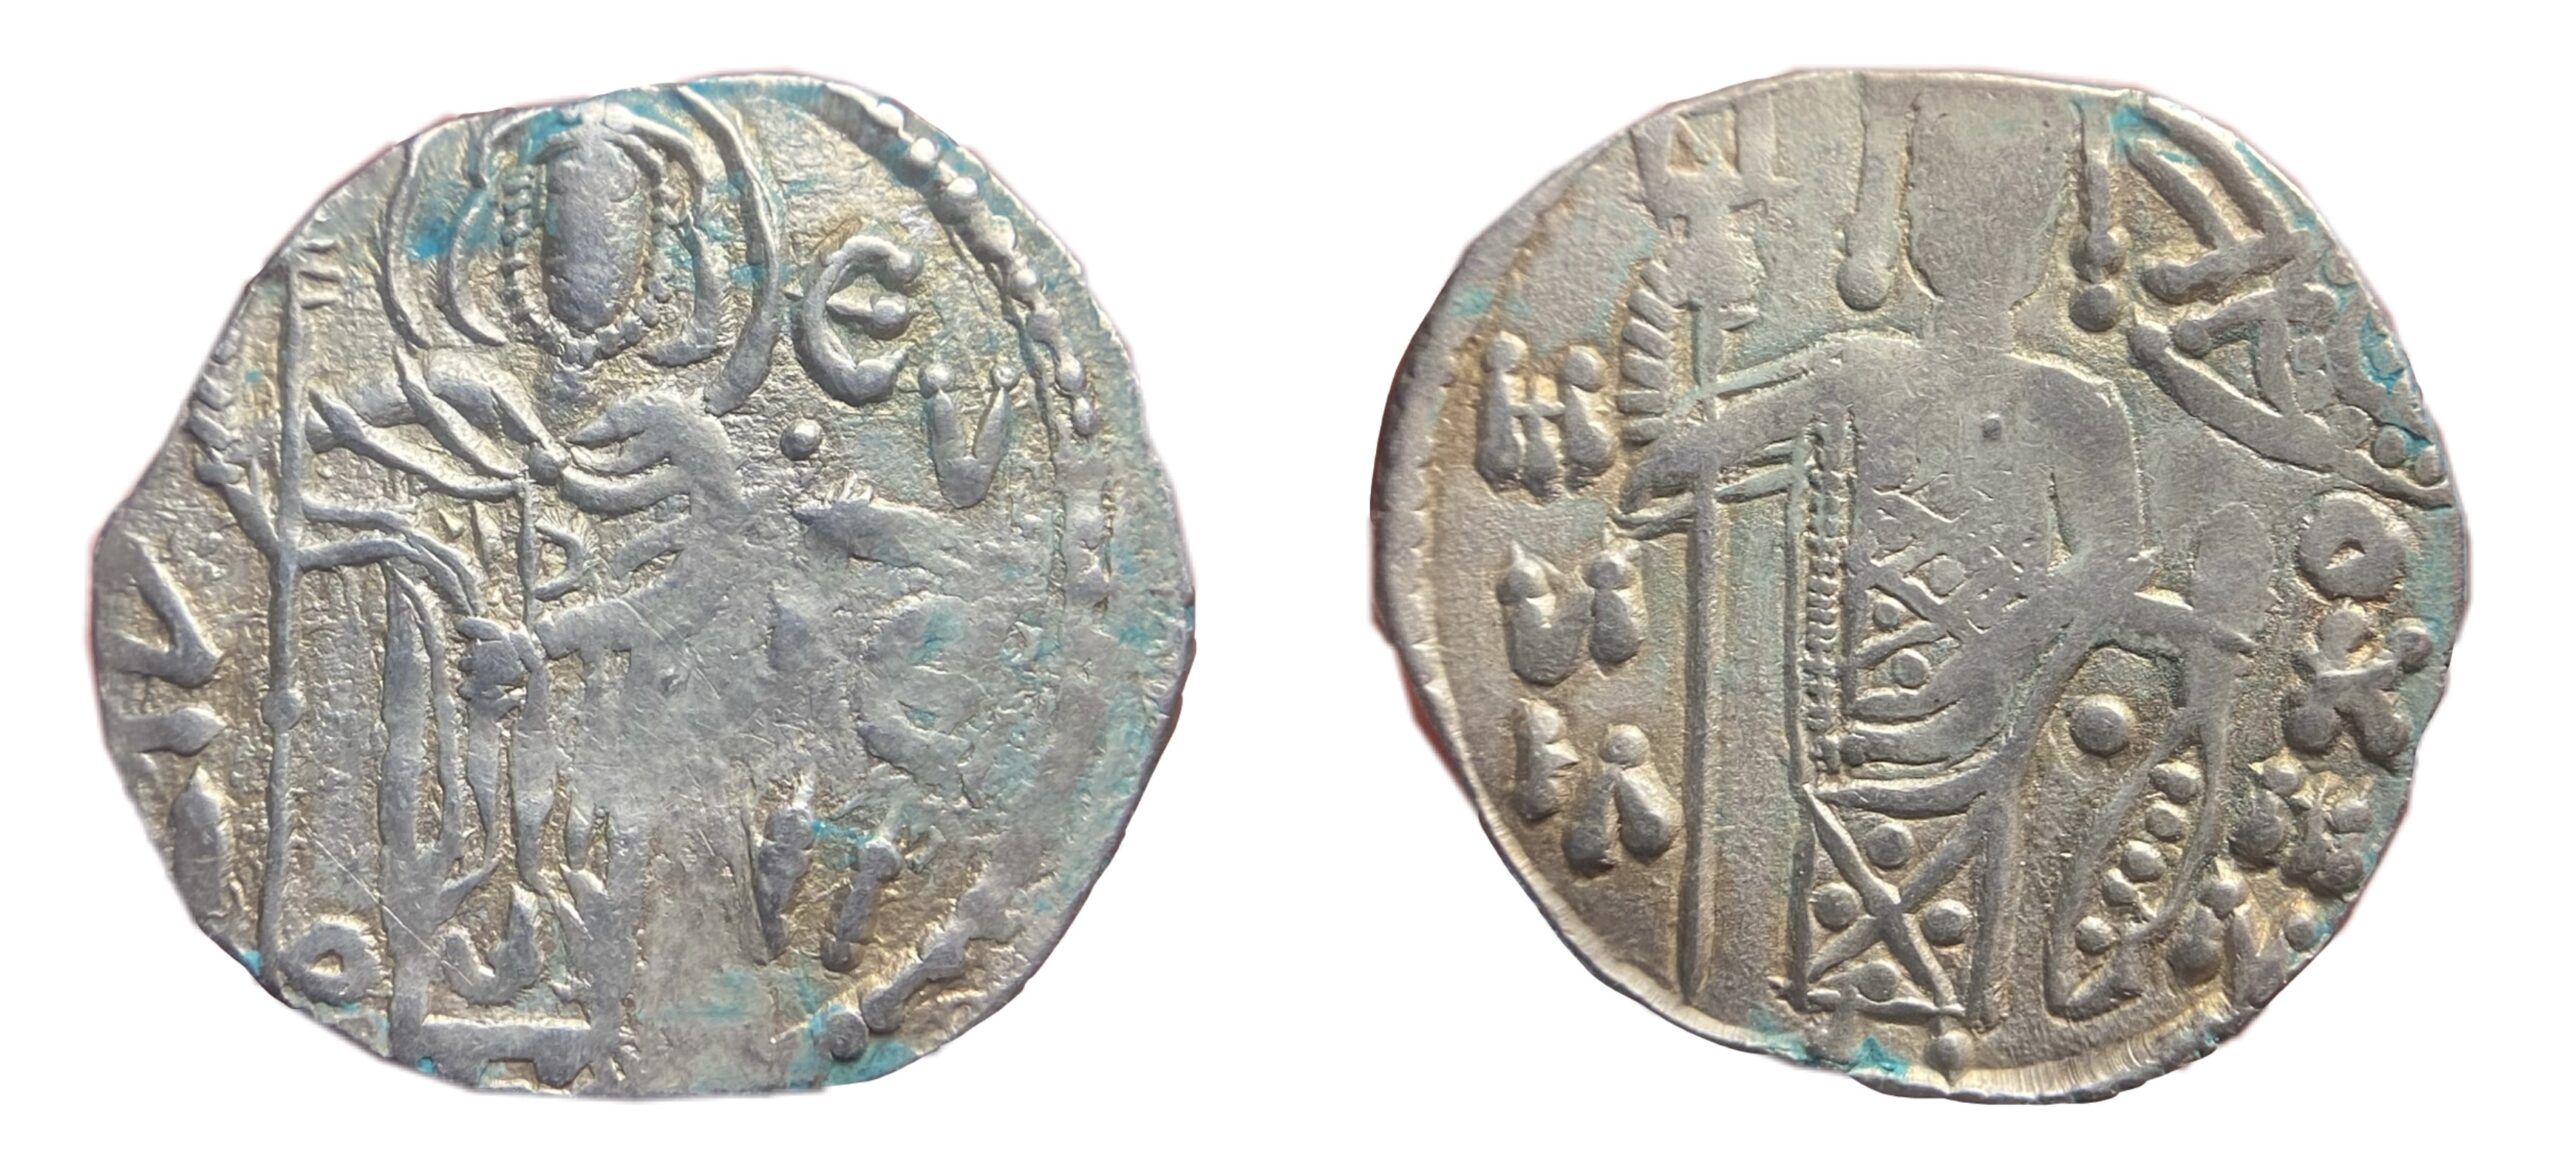 Silver asper of Manuel I Komnenos (Treb)